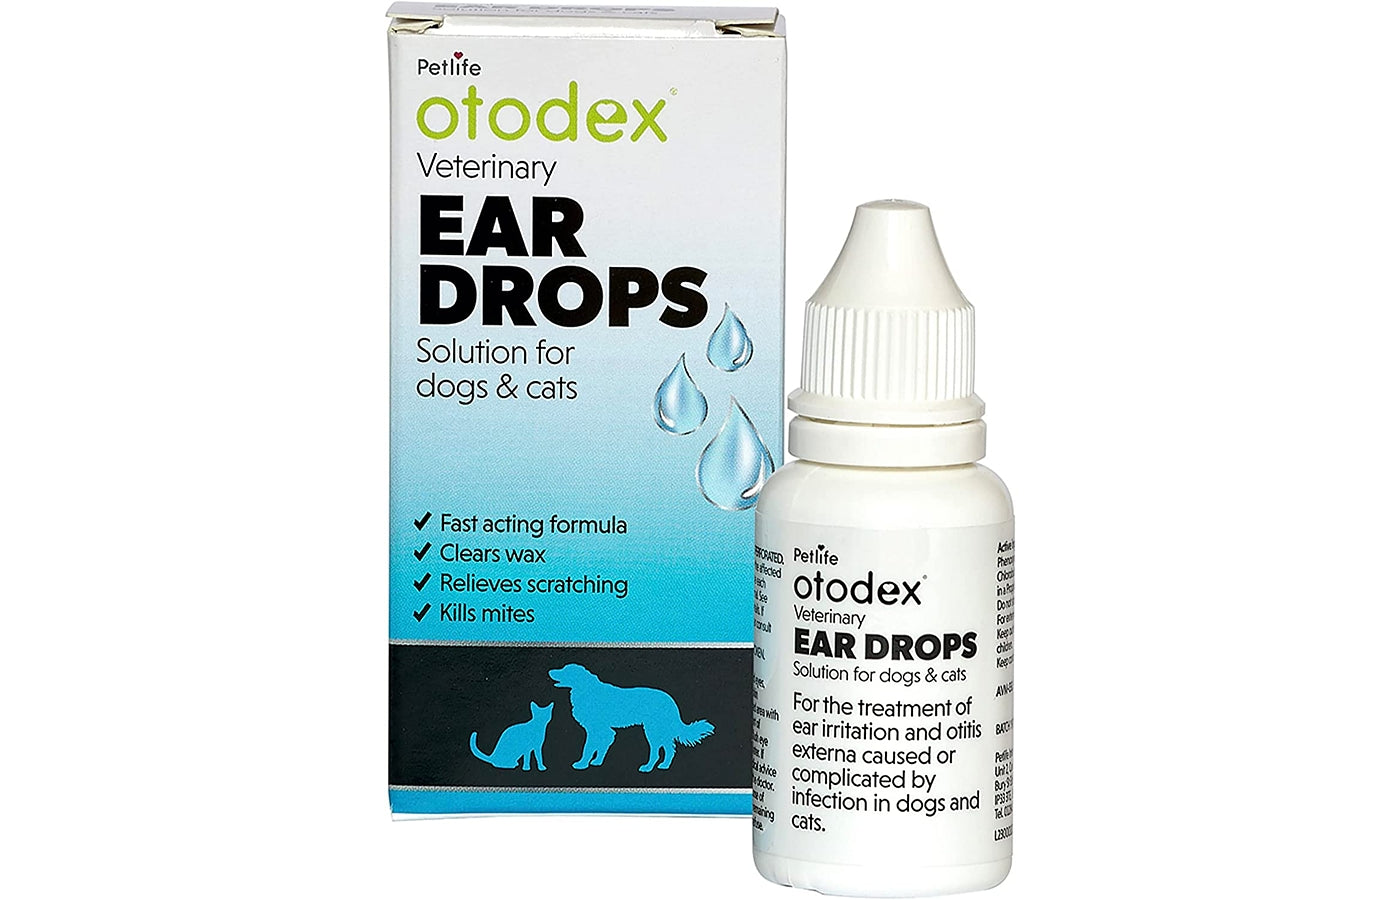 Petlife - Otodex Ear Drops - 14ml